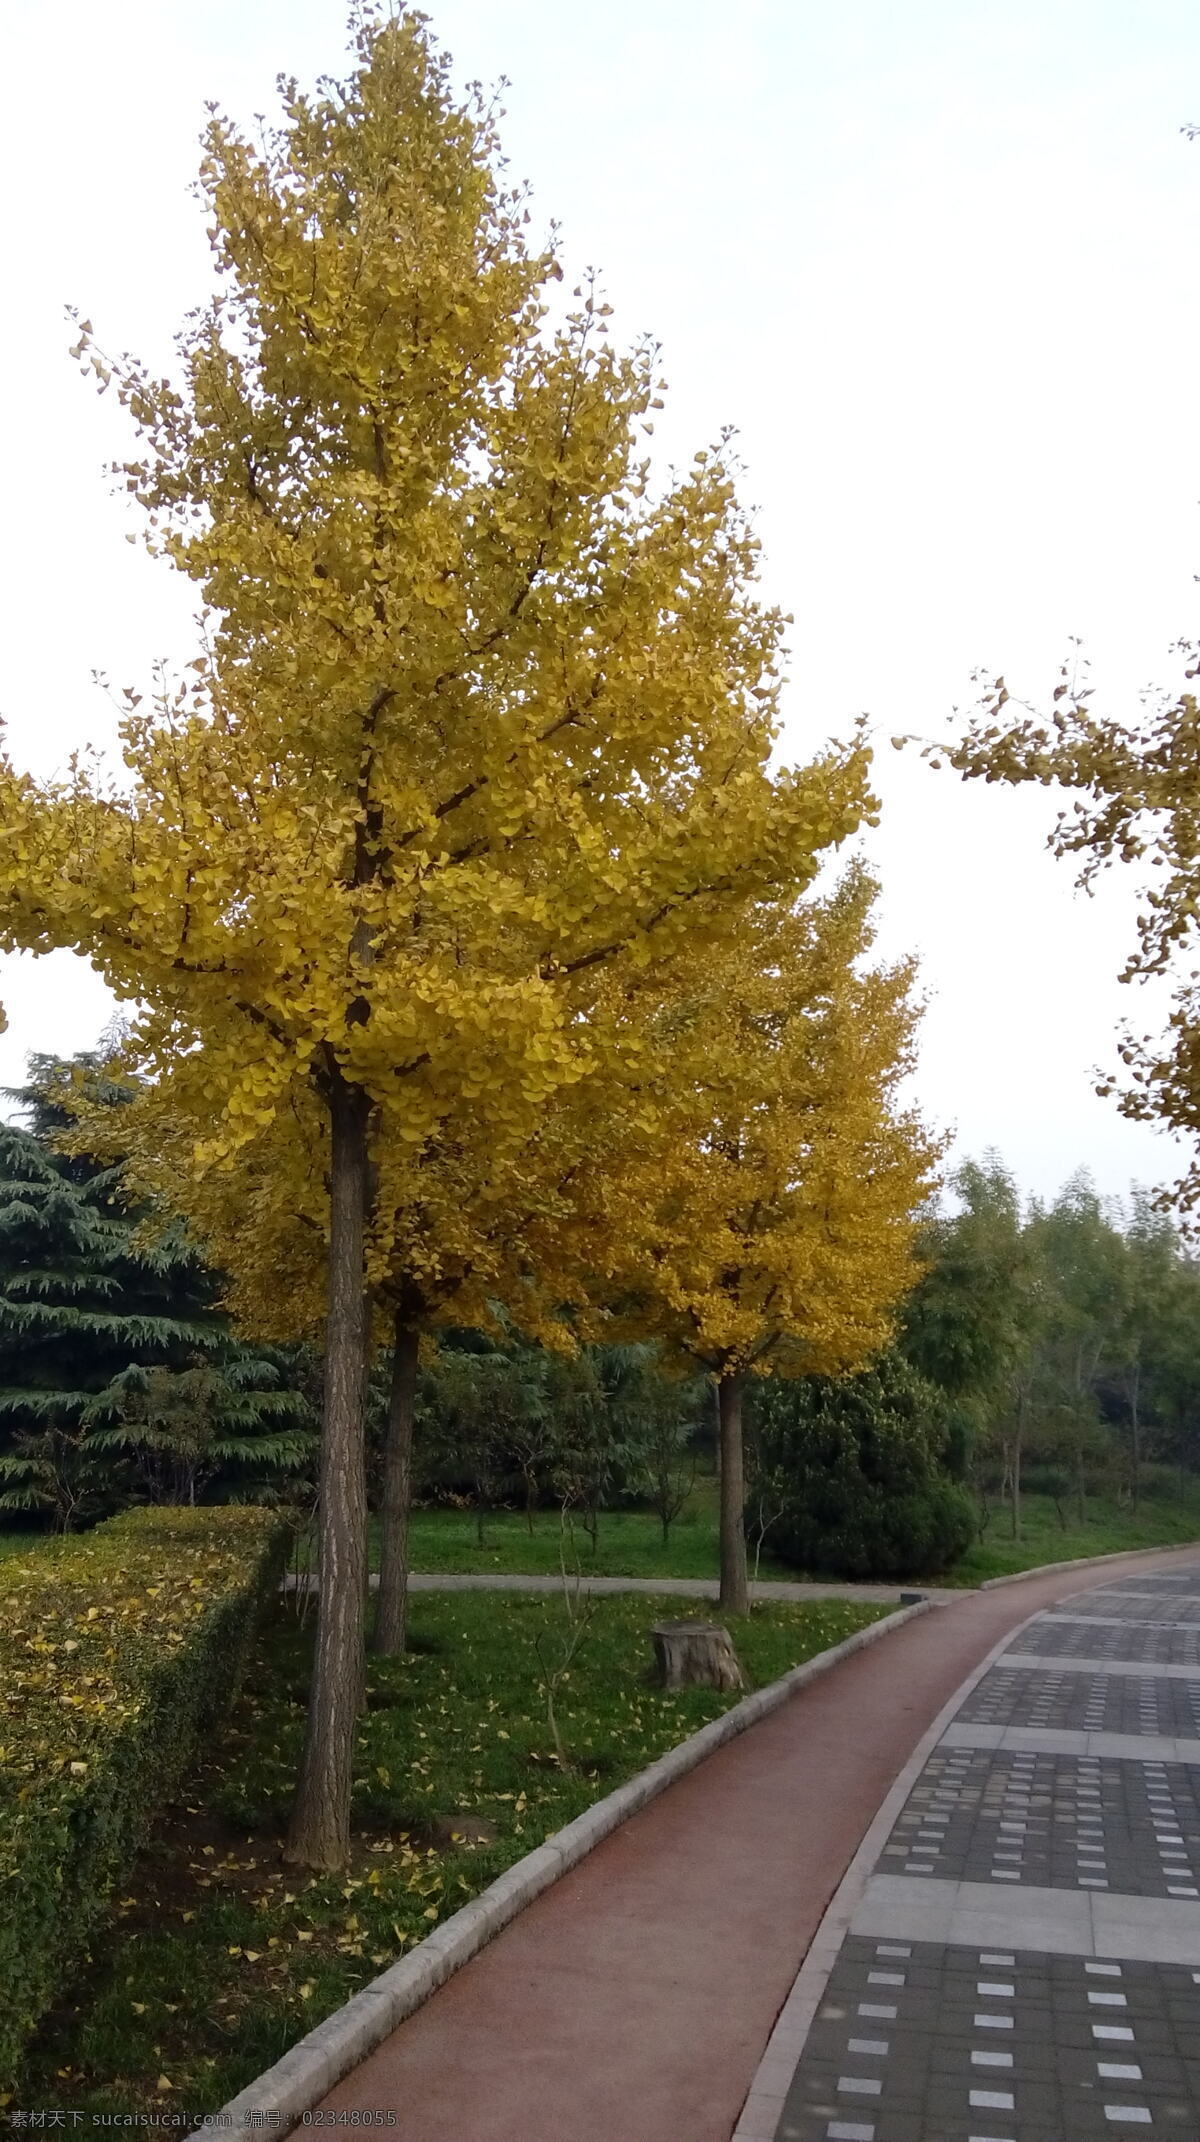 树林 深秋 茂 高大 银杏树 银杏树叶 金黄色 秋天 黄色 自然景观 自然风景